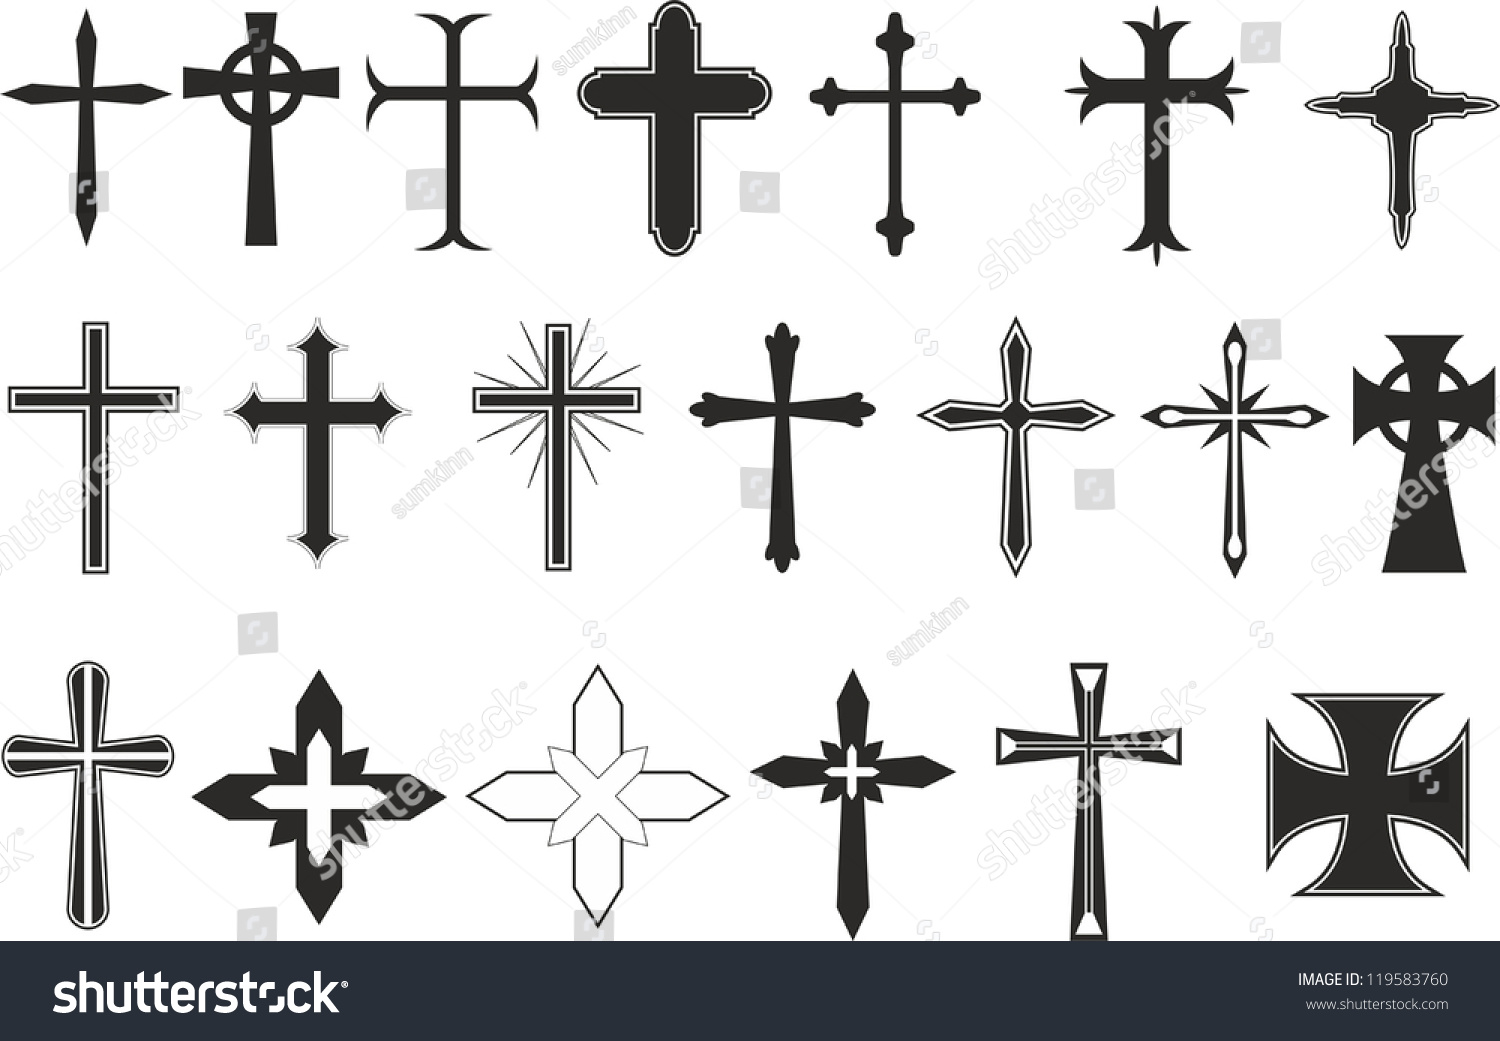 Cross Symbols Stock Vector Illustration 119583760 : Shutterstock